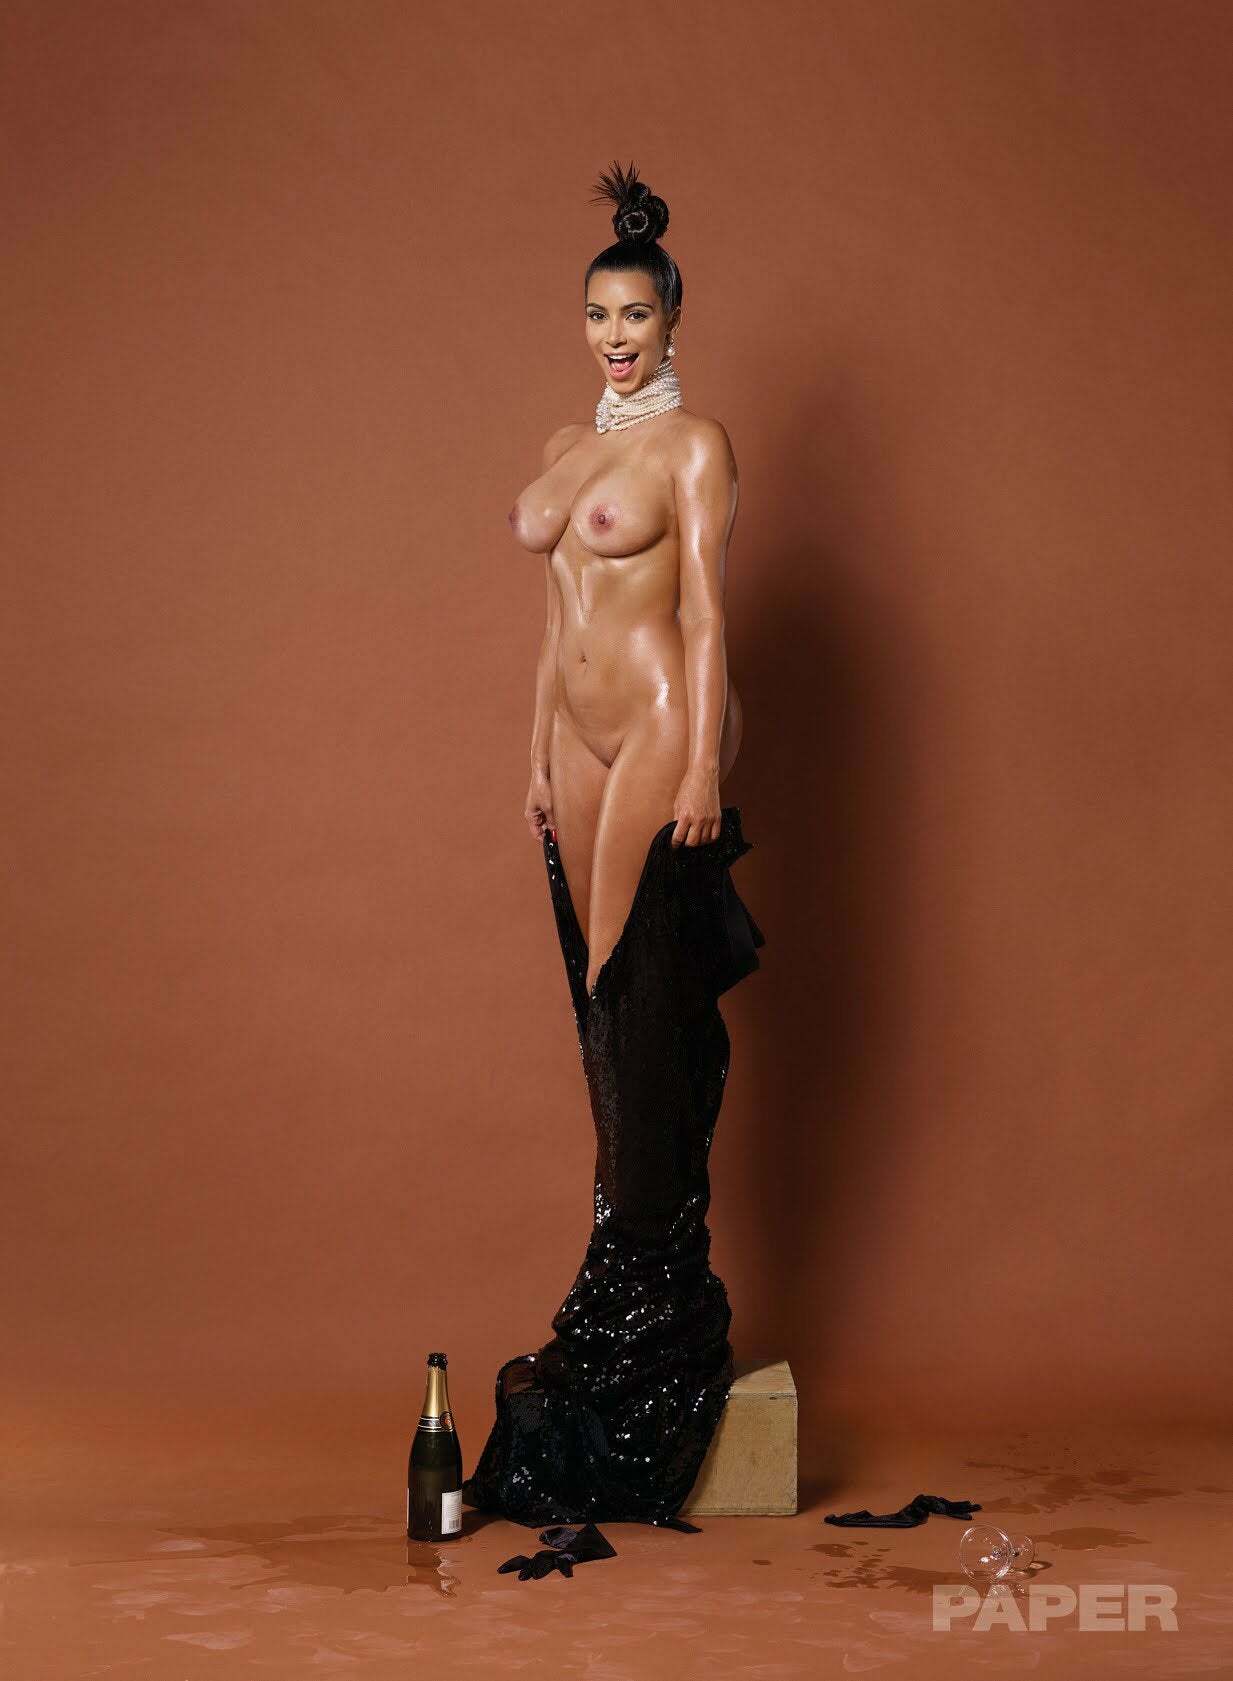 Kim Kardashian paper magazine cover